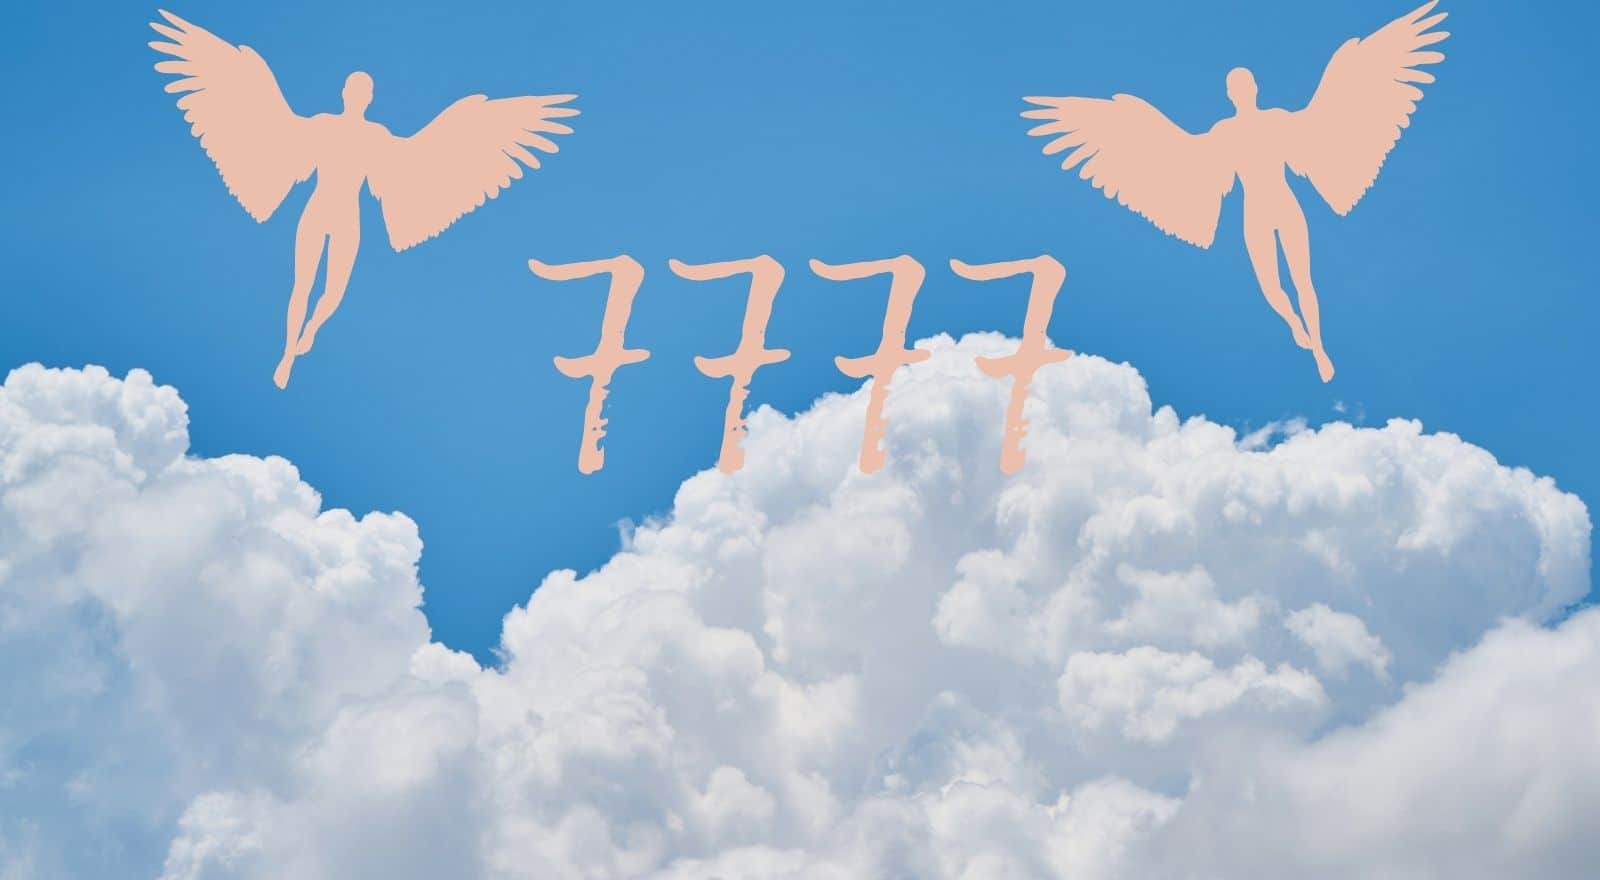 Engelennummer 7777 – Een oproep tot spiritualiteit en meditatie